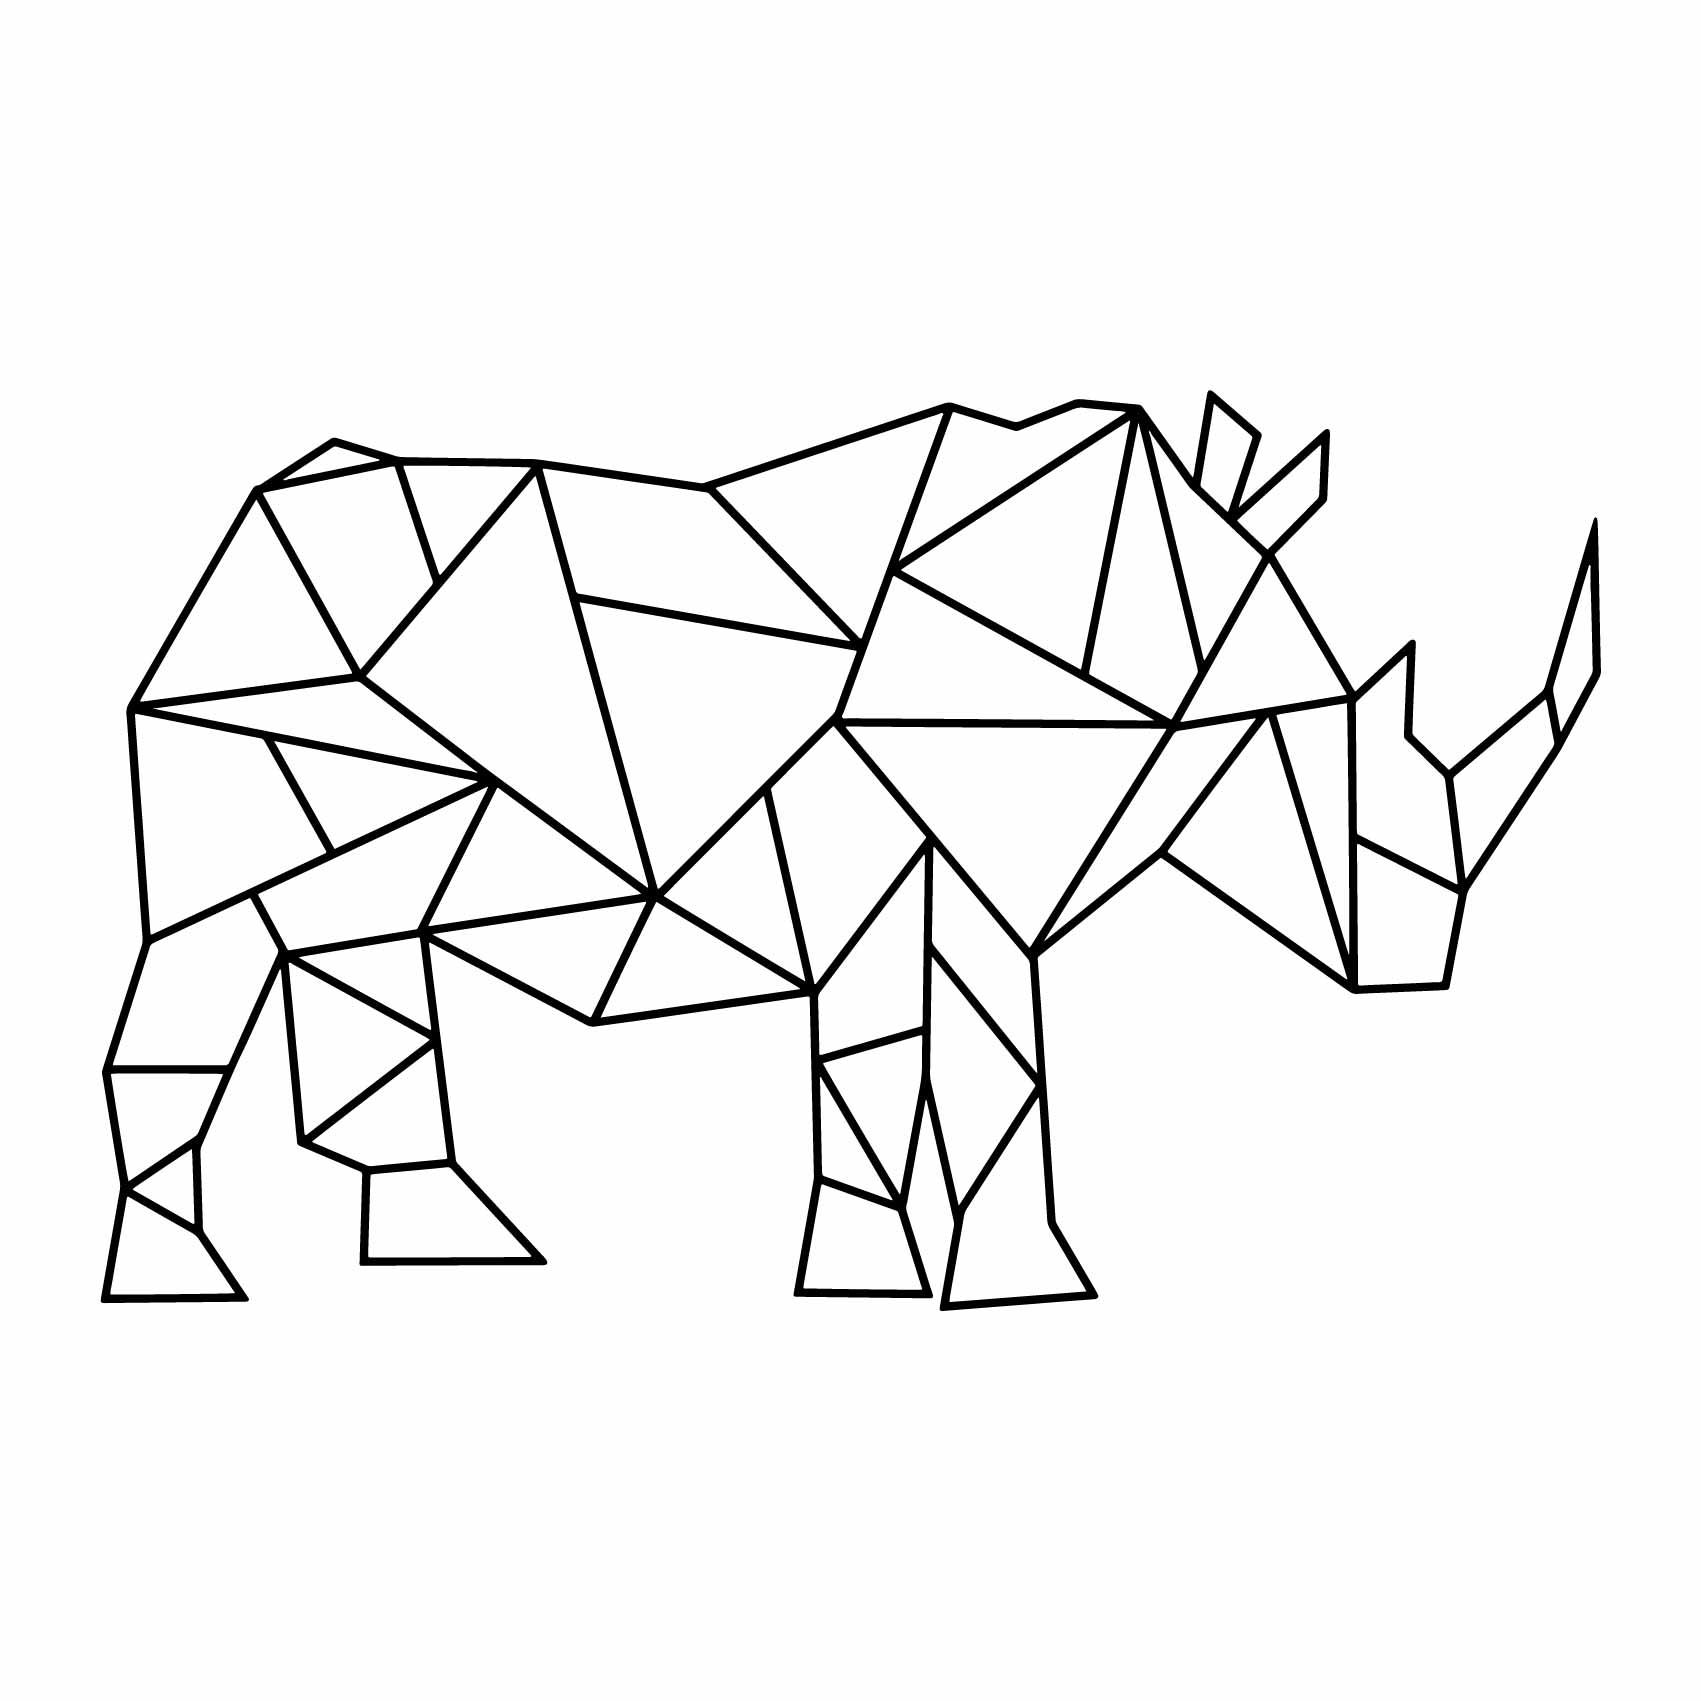 stickers-rhinoceros-origami-ref1rhinoceros-stickers-muraux-origami-autocollant-deco-salon-chambre-sticker-mural-origami-decoration-(2)